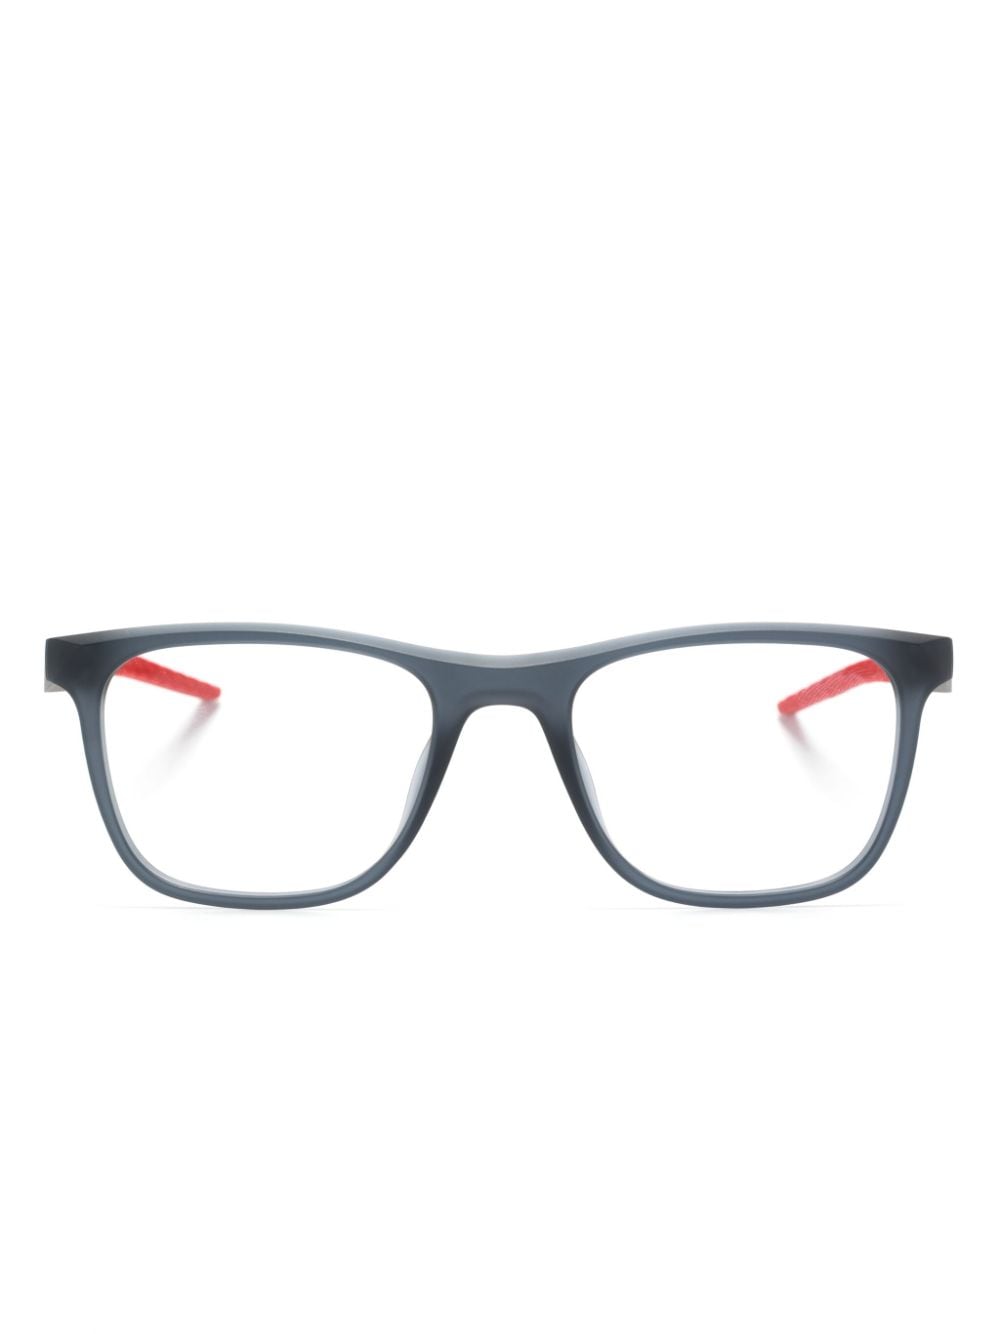 7056 rectangle-frame glasses